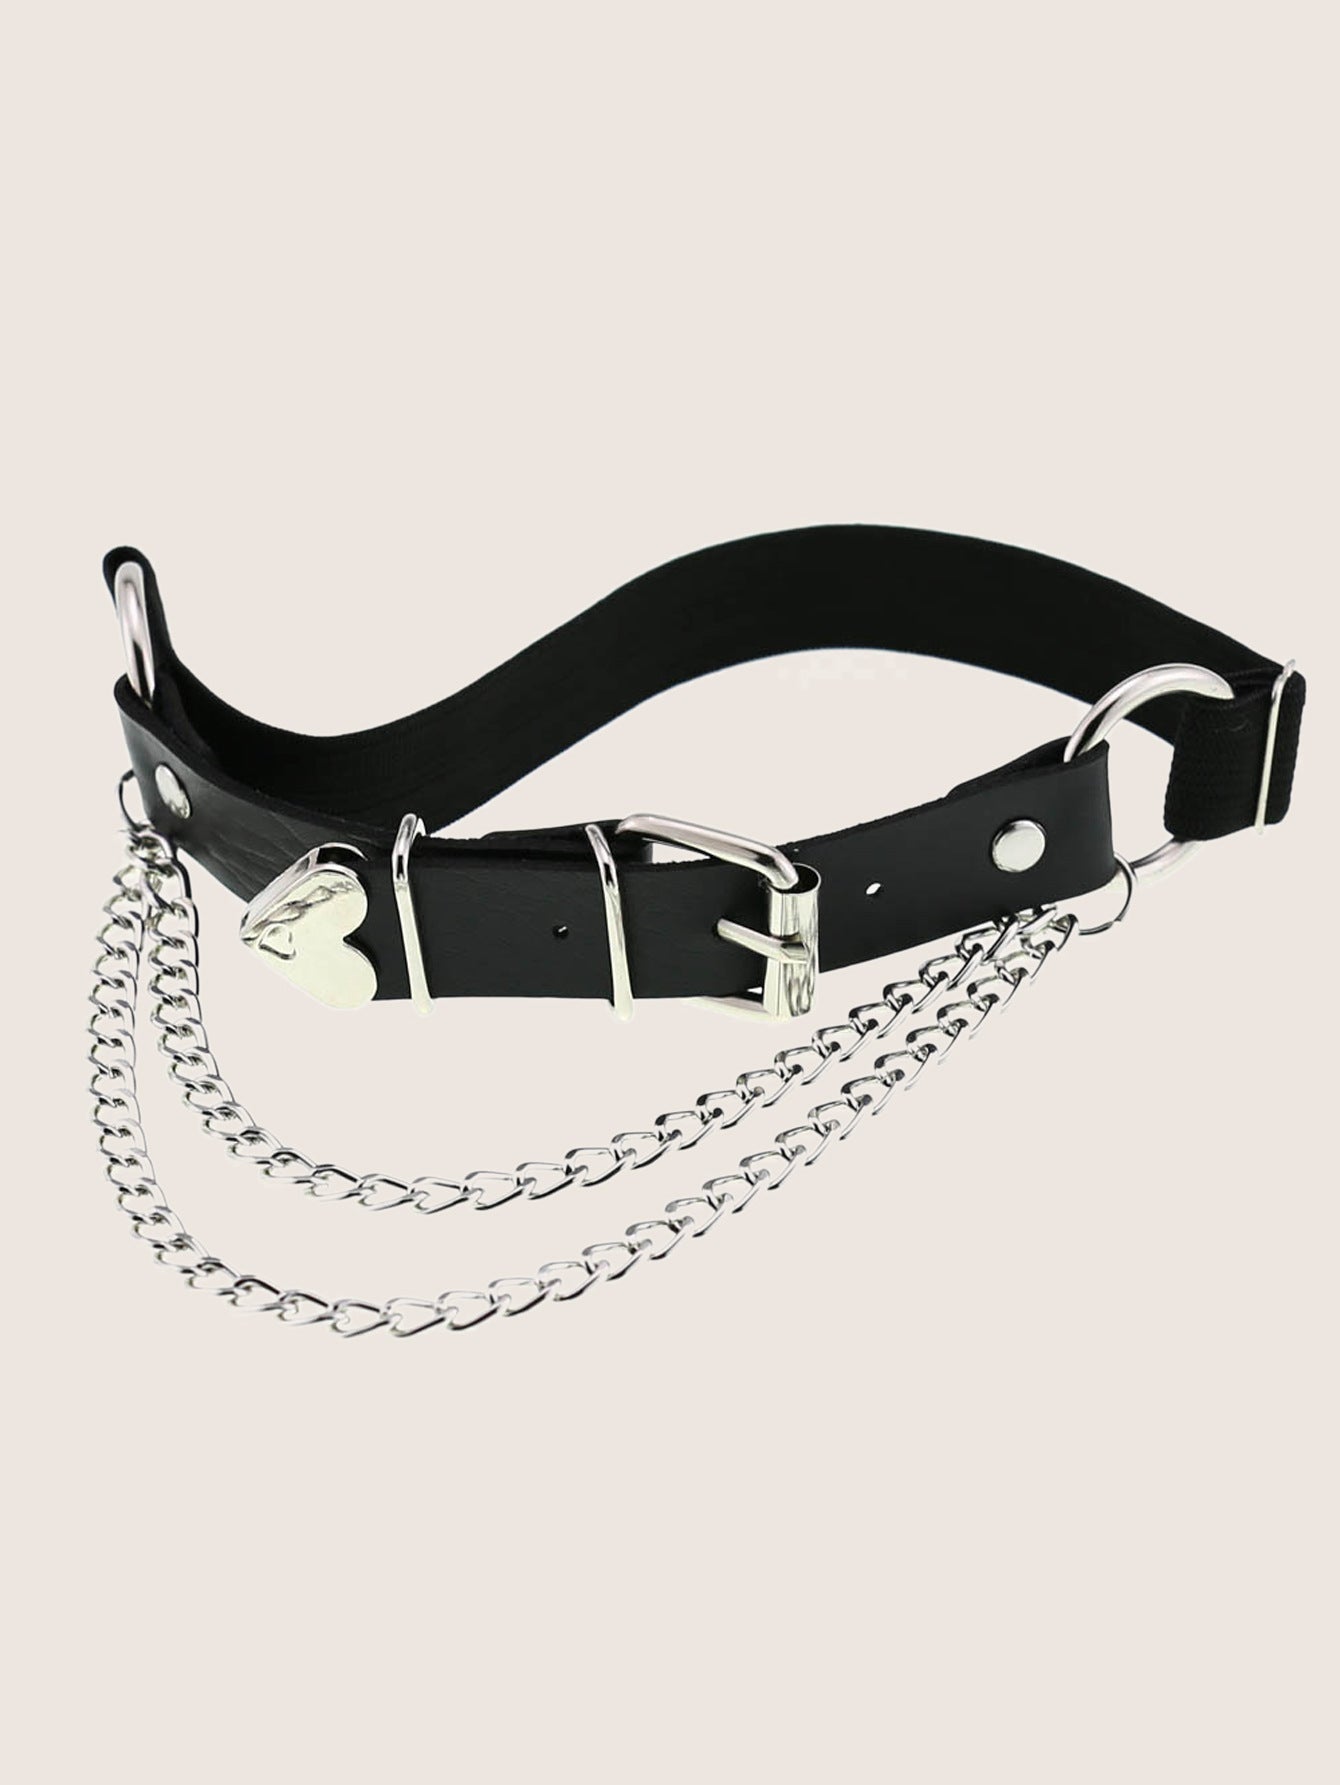 A Sex Heart Chain Elastic Leather Irregular Garter Belt